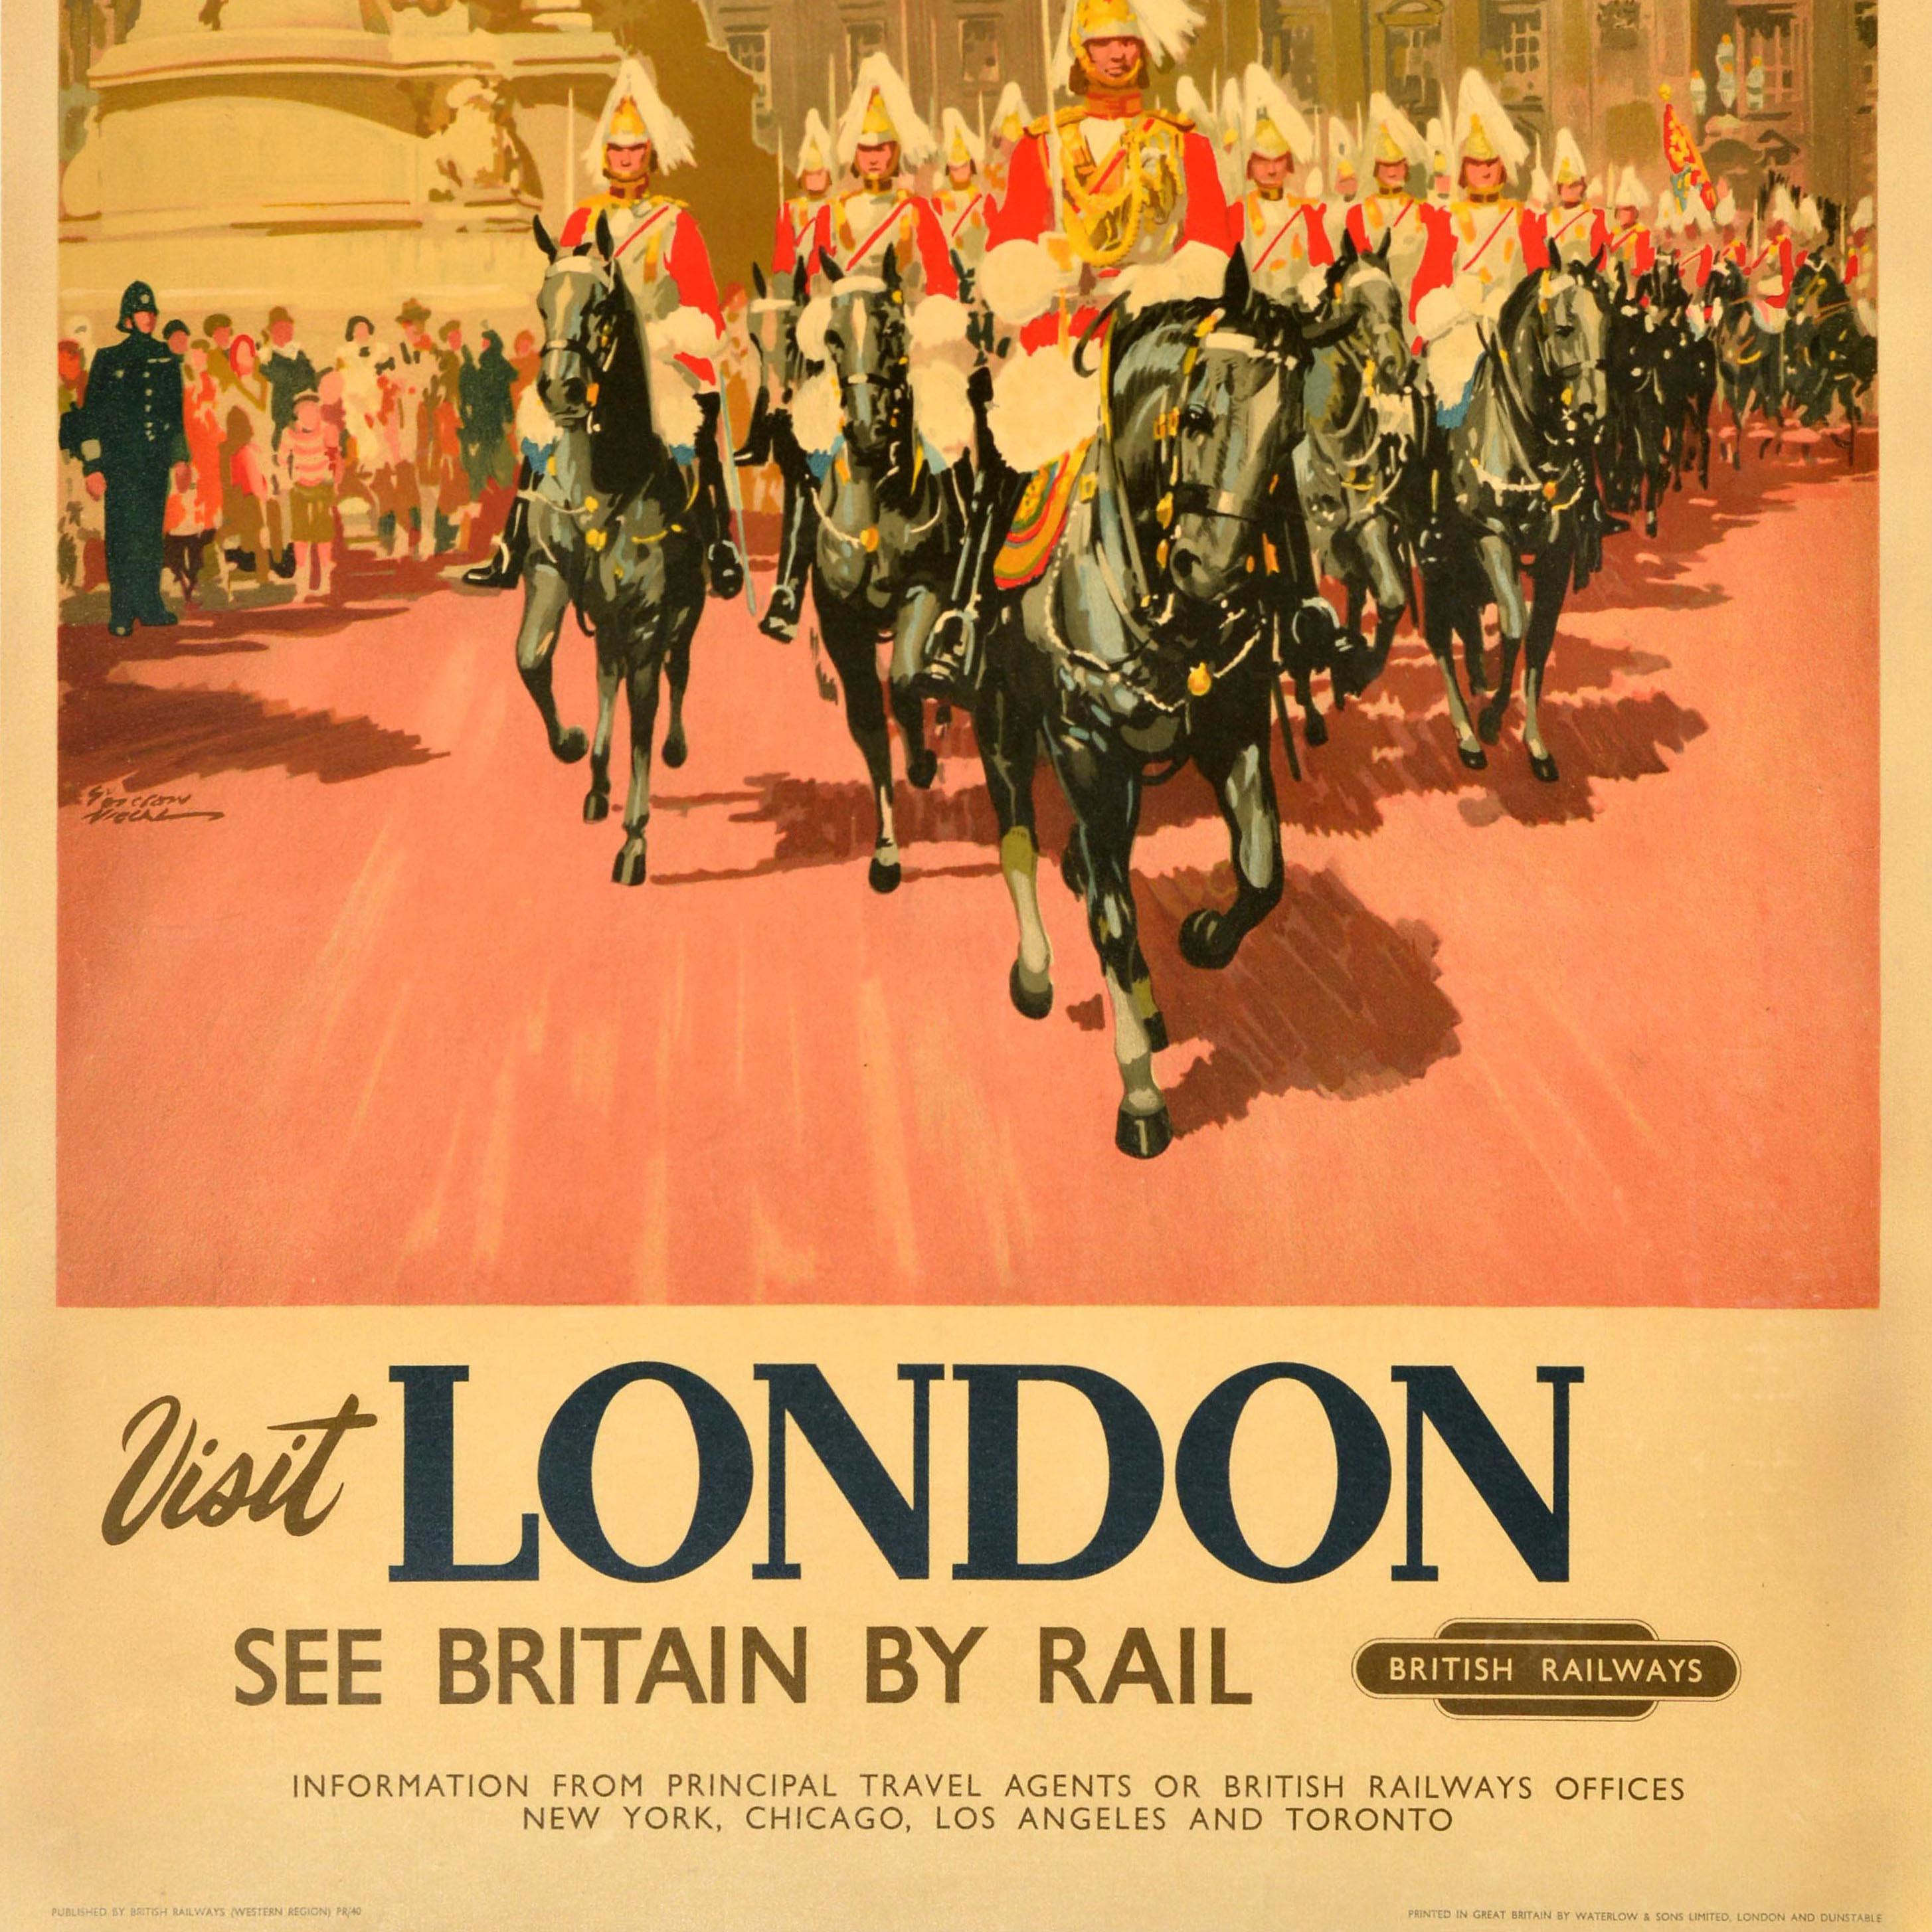 Original vintage British Railways Reiseplakat - Visit London See Britain by Rail - mit einem farbenfrohen Kunstwerk von Gordon Nicoll (1888-1959), das eine Prozession von Horse Guards zeigt, die vom Buckingham Palace auf den Betrachter zureiten und